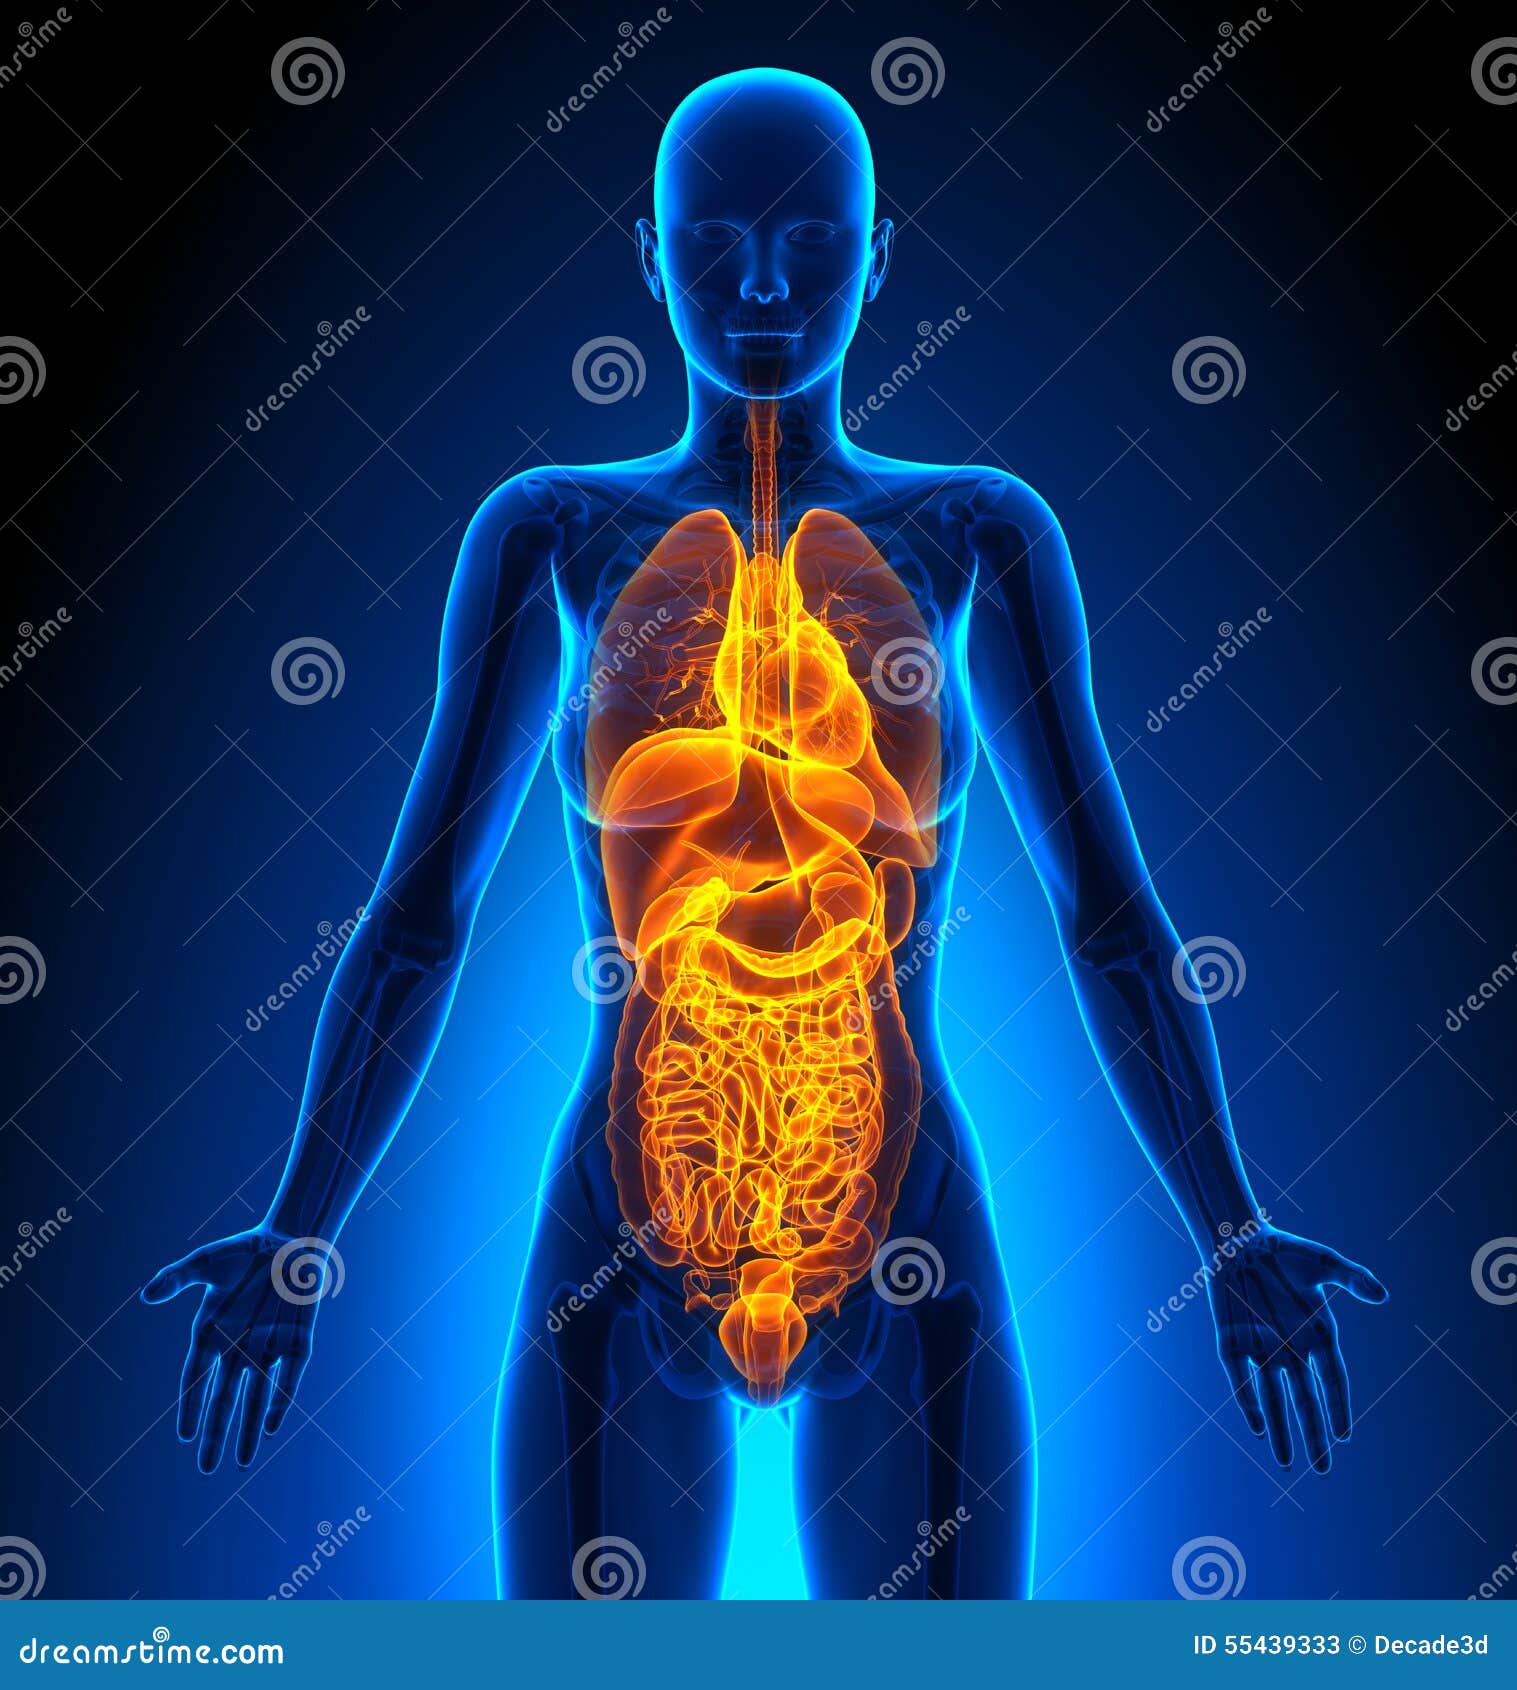 human body organs female